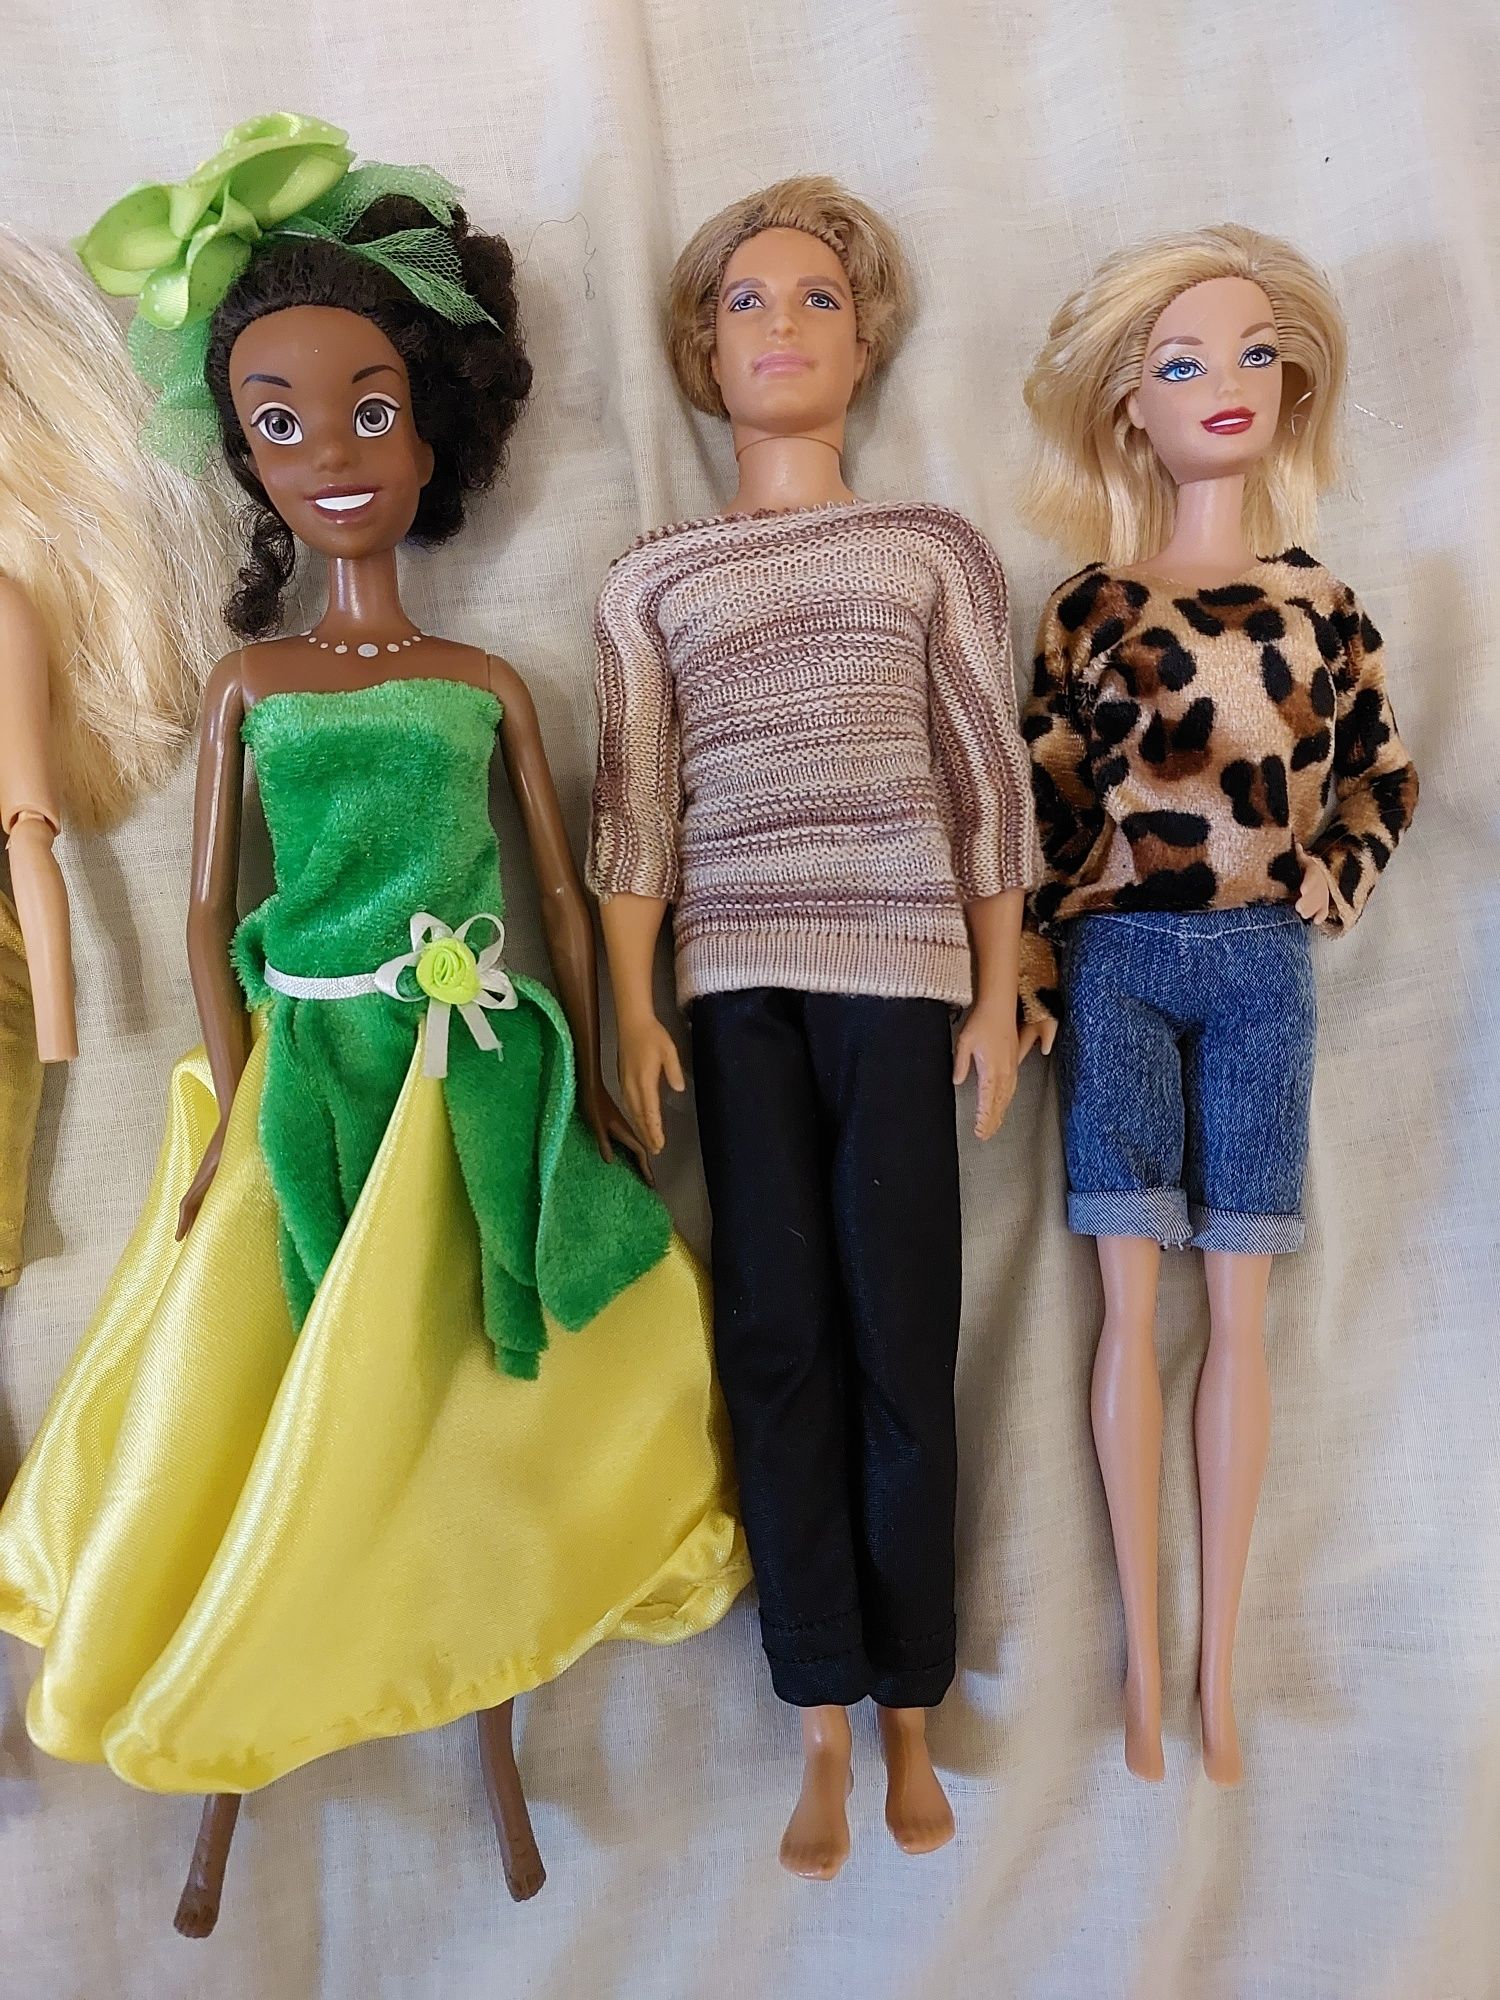 Куклы Барби,Кен игровые с нюансами,под реставрацию или запчасти